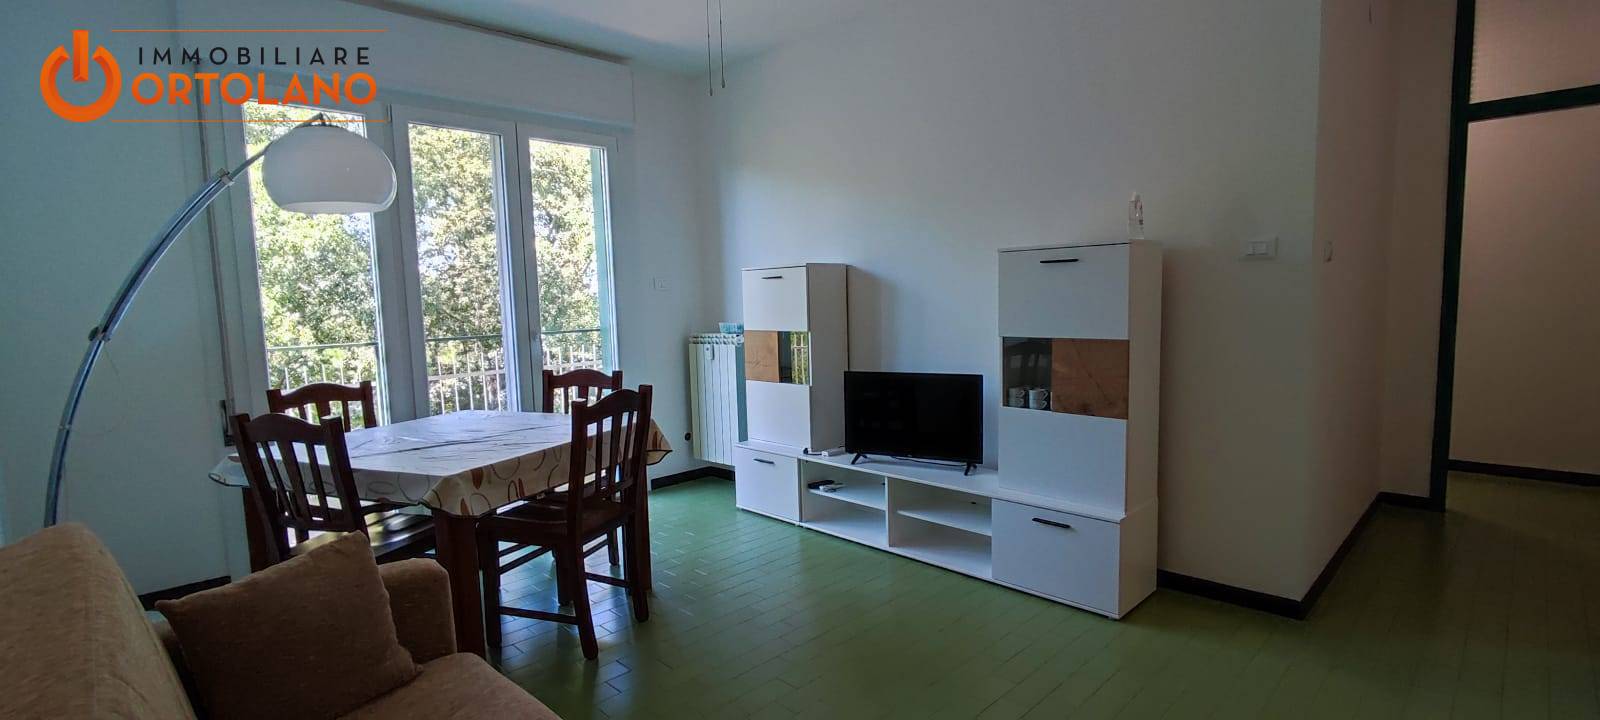 Appartamento in affitto a Monfalcone, 3 locali, zona Località: MarinaJulia, prezzo € 480 | PortaleAgenzieImmobiliari.it